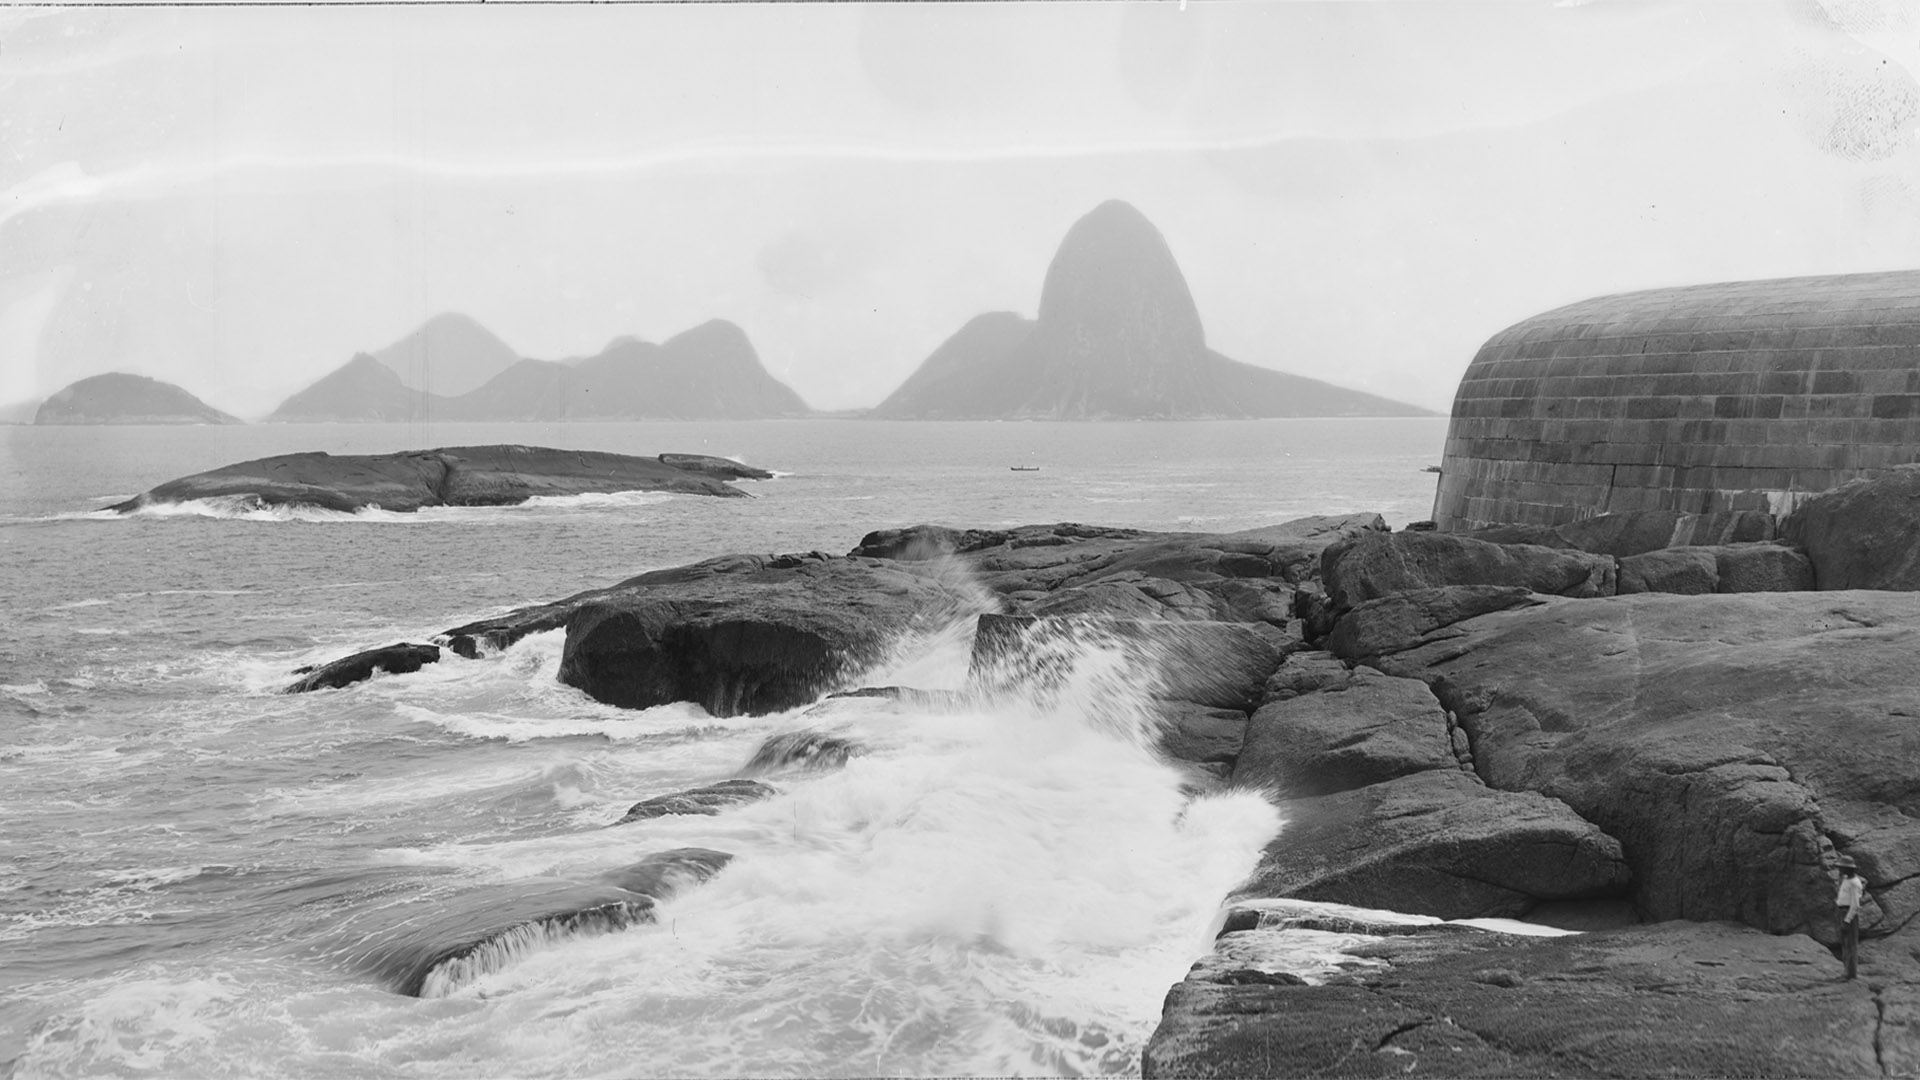 Vista do Pão de Açúcar a partir de Niterói, c.1890. Rio de Janeiro. Foto de Marc Ferrez. Coleção Gilberto Ferrez/ Acervo IMS